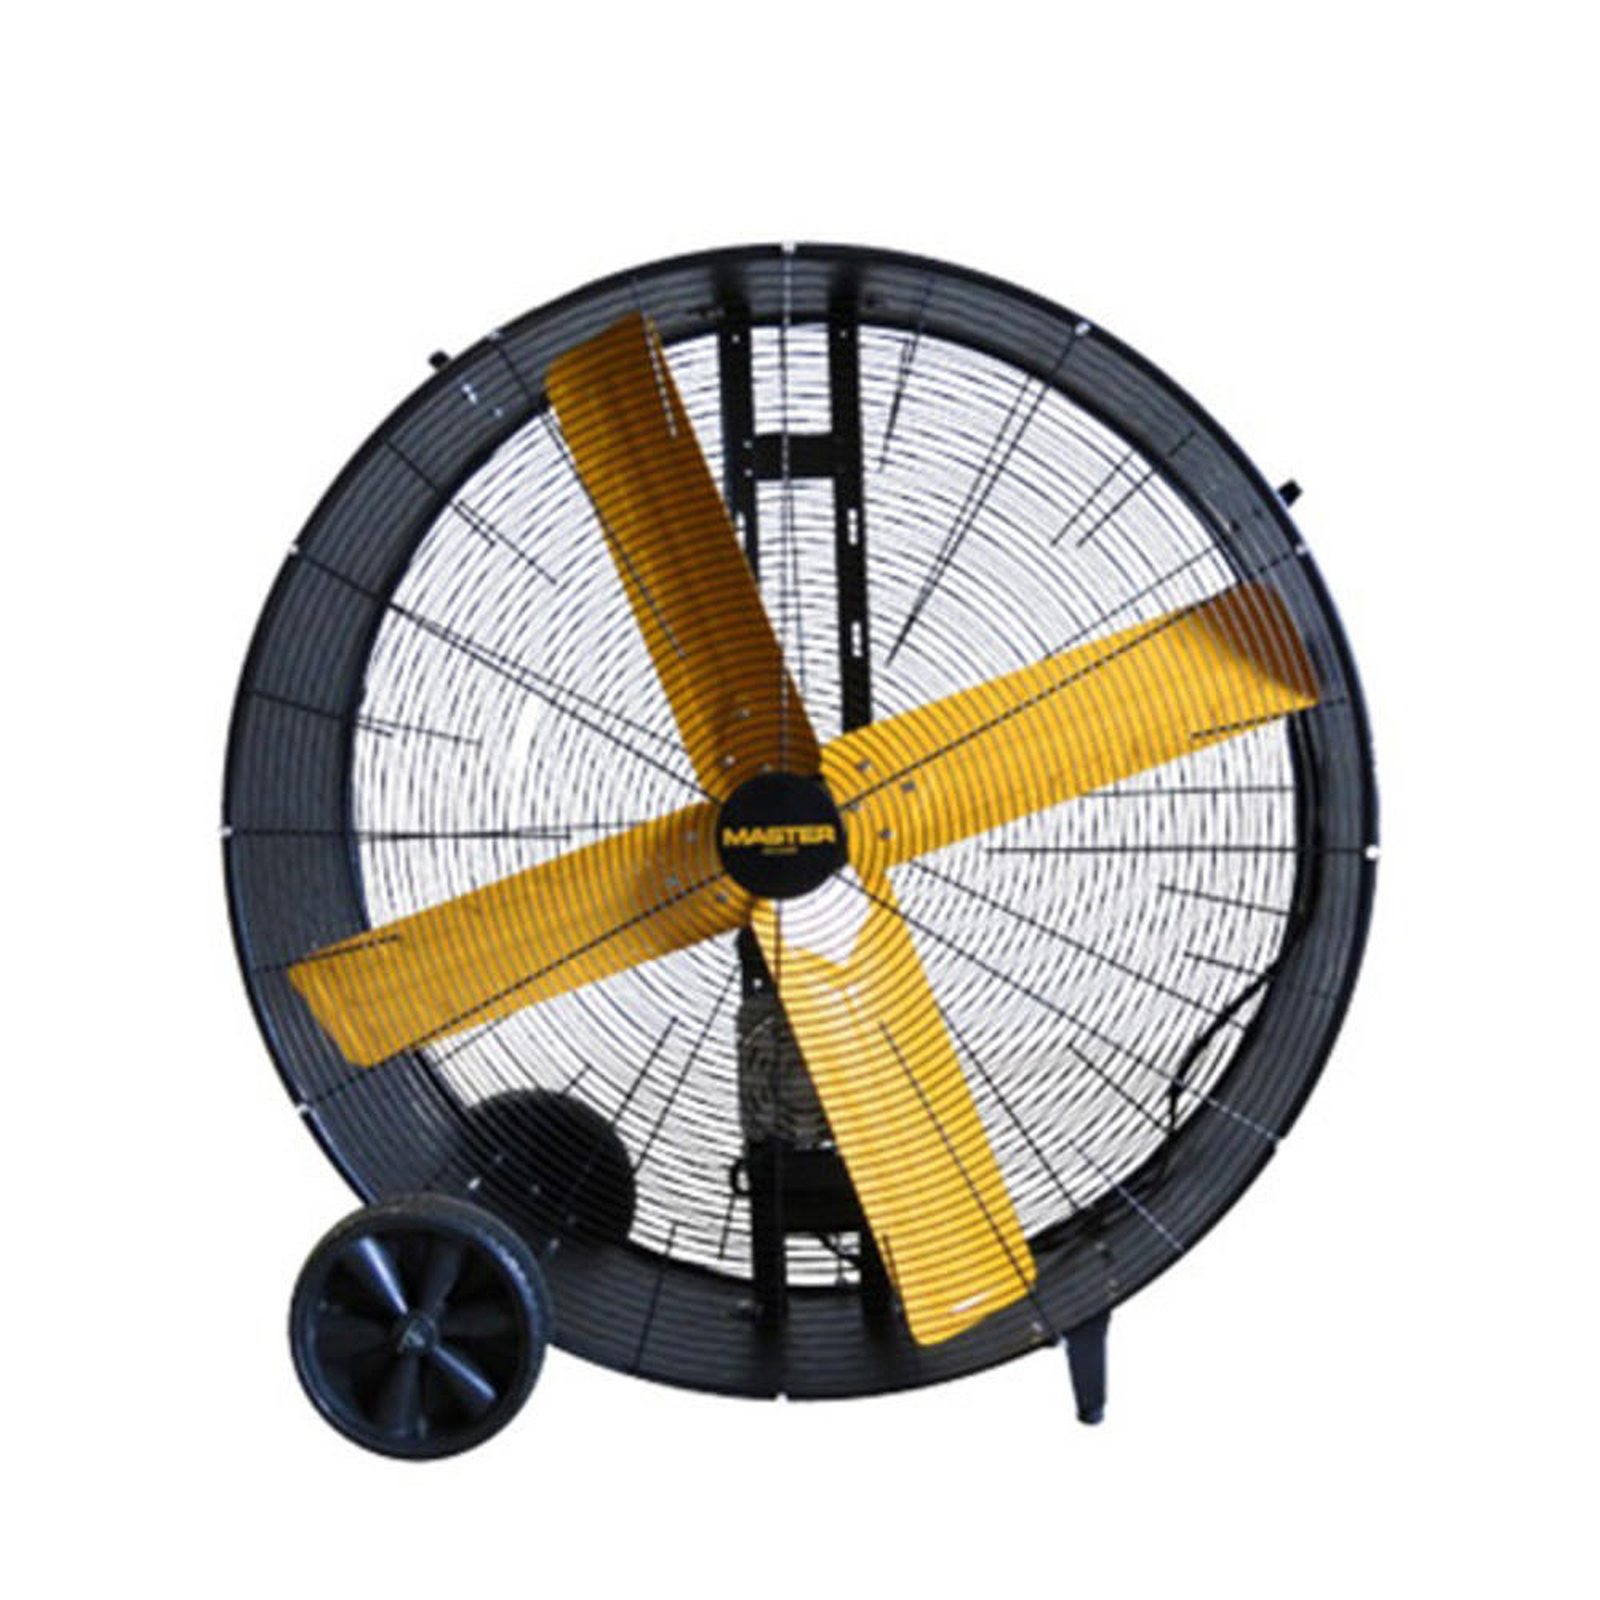 Master 42" Belt-Drive Portable Barrel Fan w/ Fold-Out Wheel